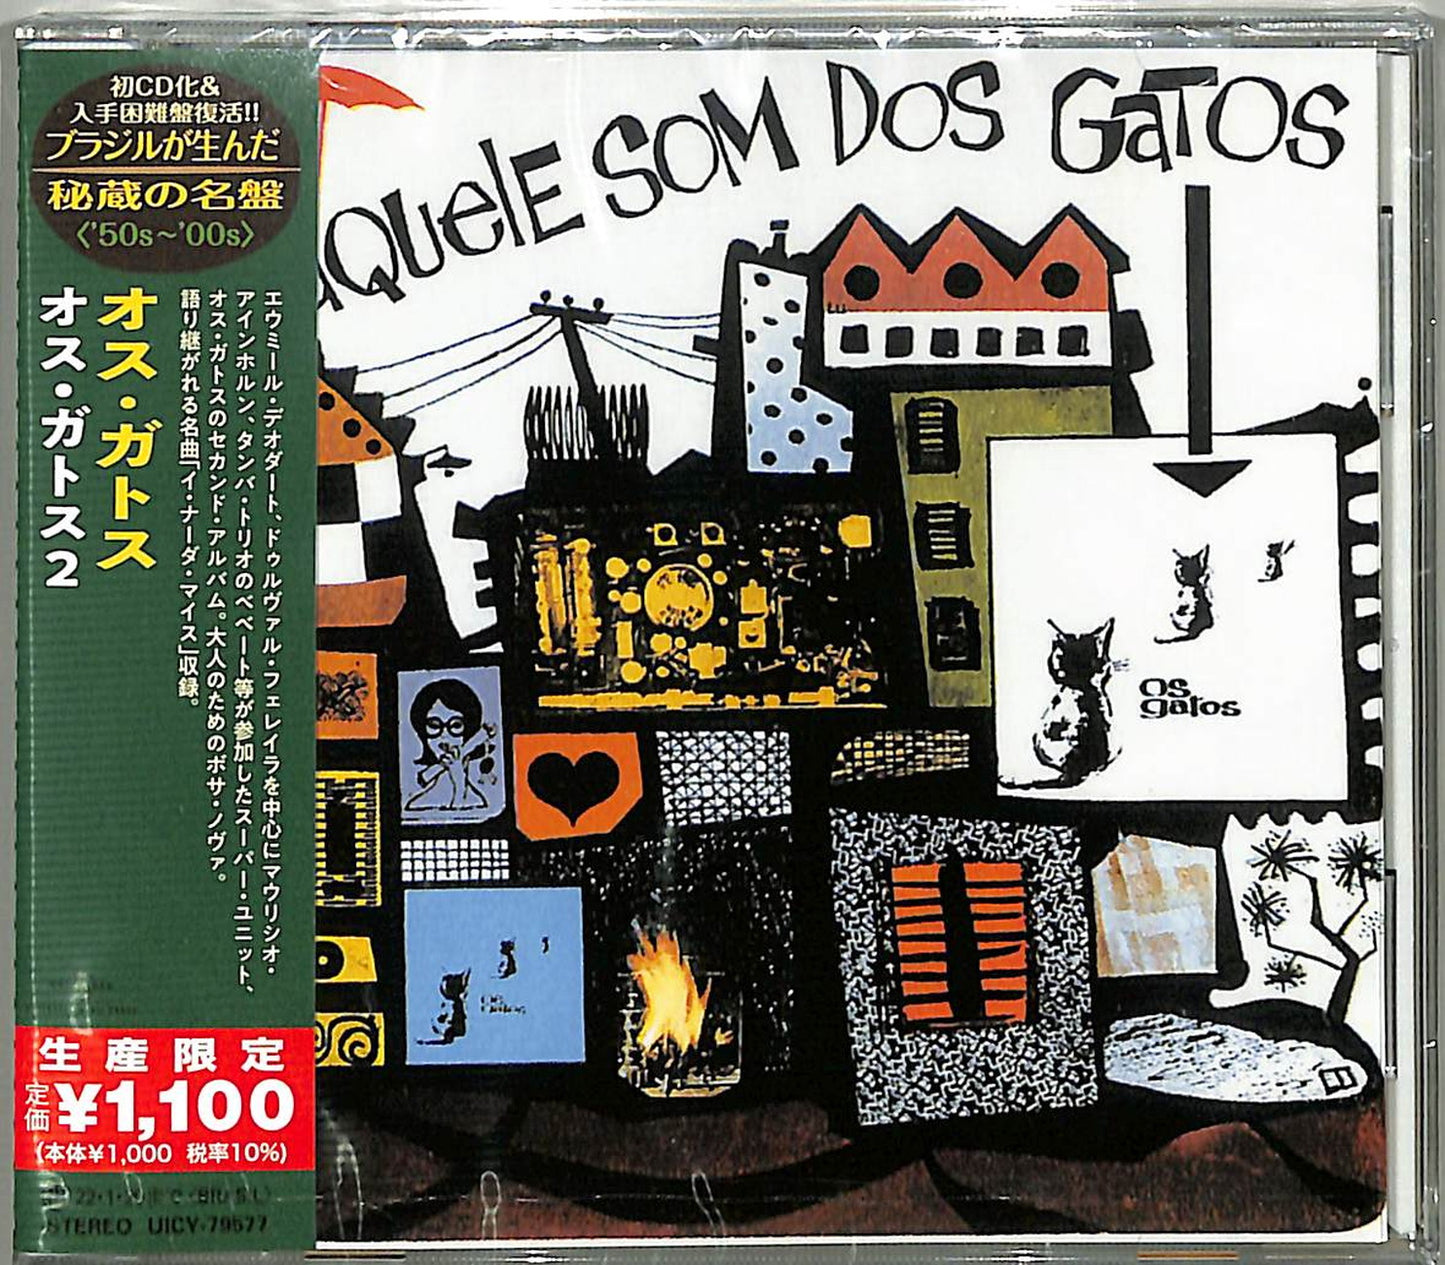 Os Gatos - Aquele Som Dos Gatos - Japan  CD Limited Edition